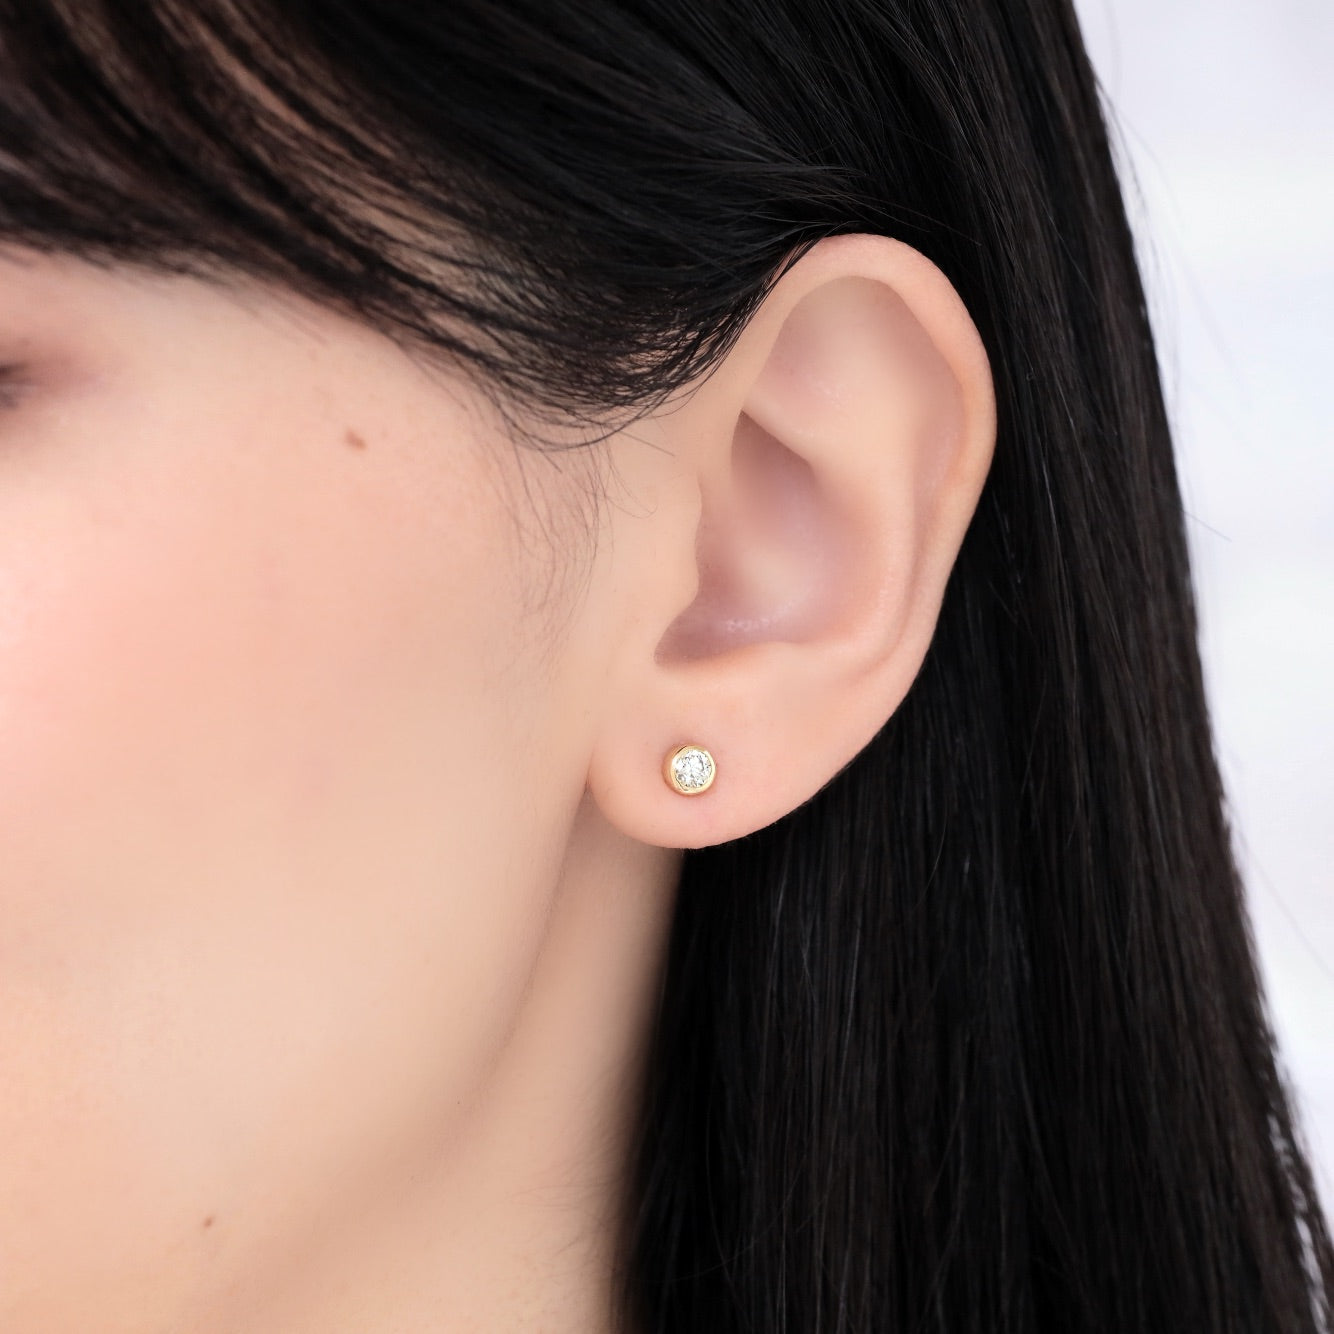 K18 Sirius/Sirius Diamond 0.4ct earrings